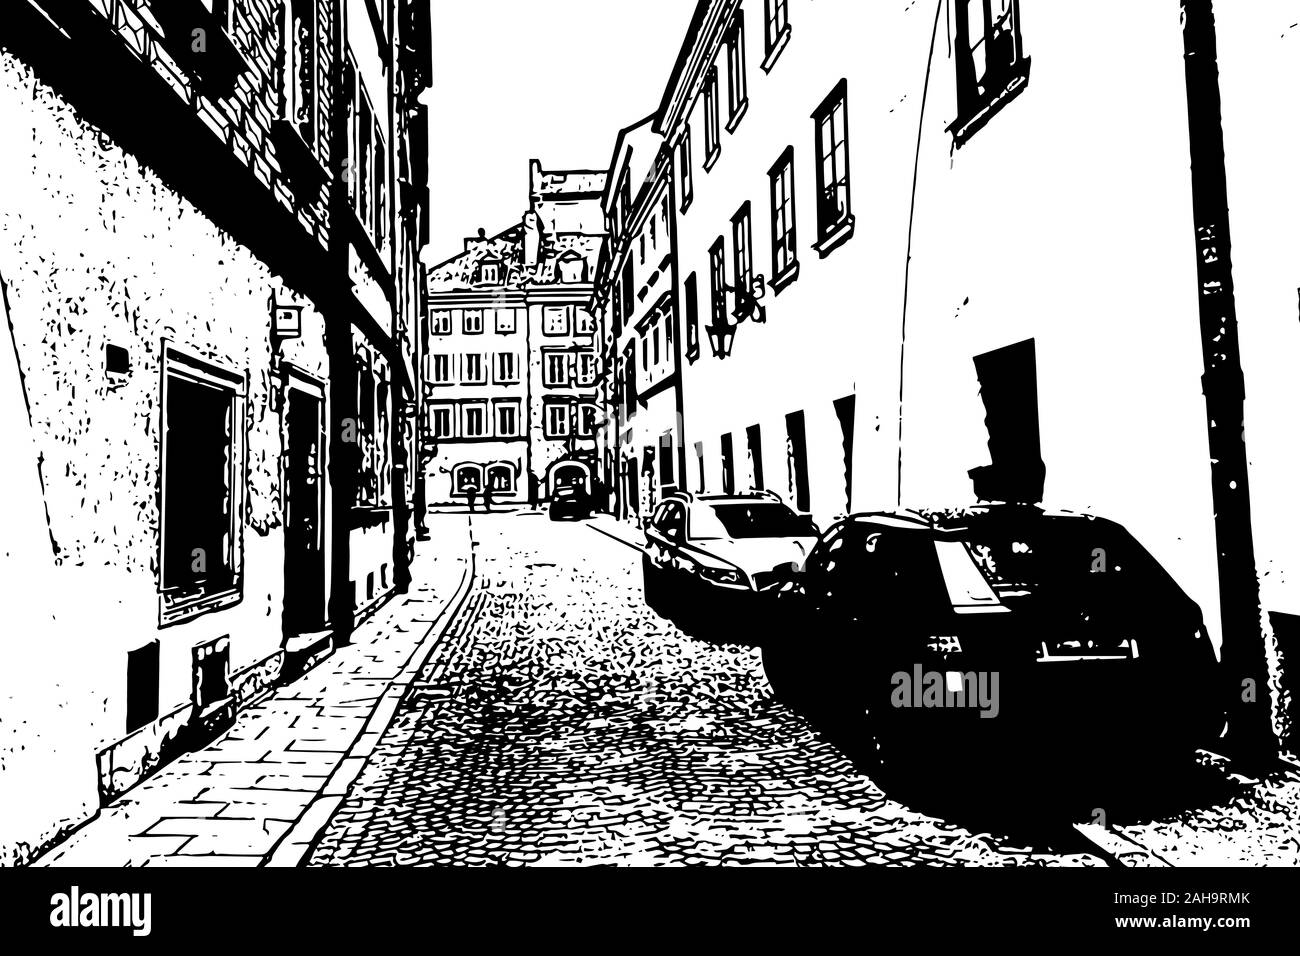 Europäische Stadt. Altstadt gasse mit parkenden Autos. Jahrgang hand gezeichnete Skizze Stock Vektor